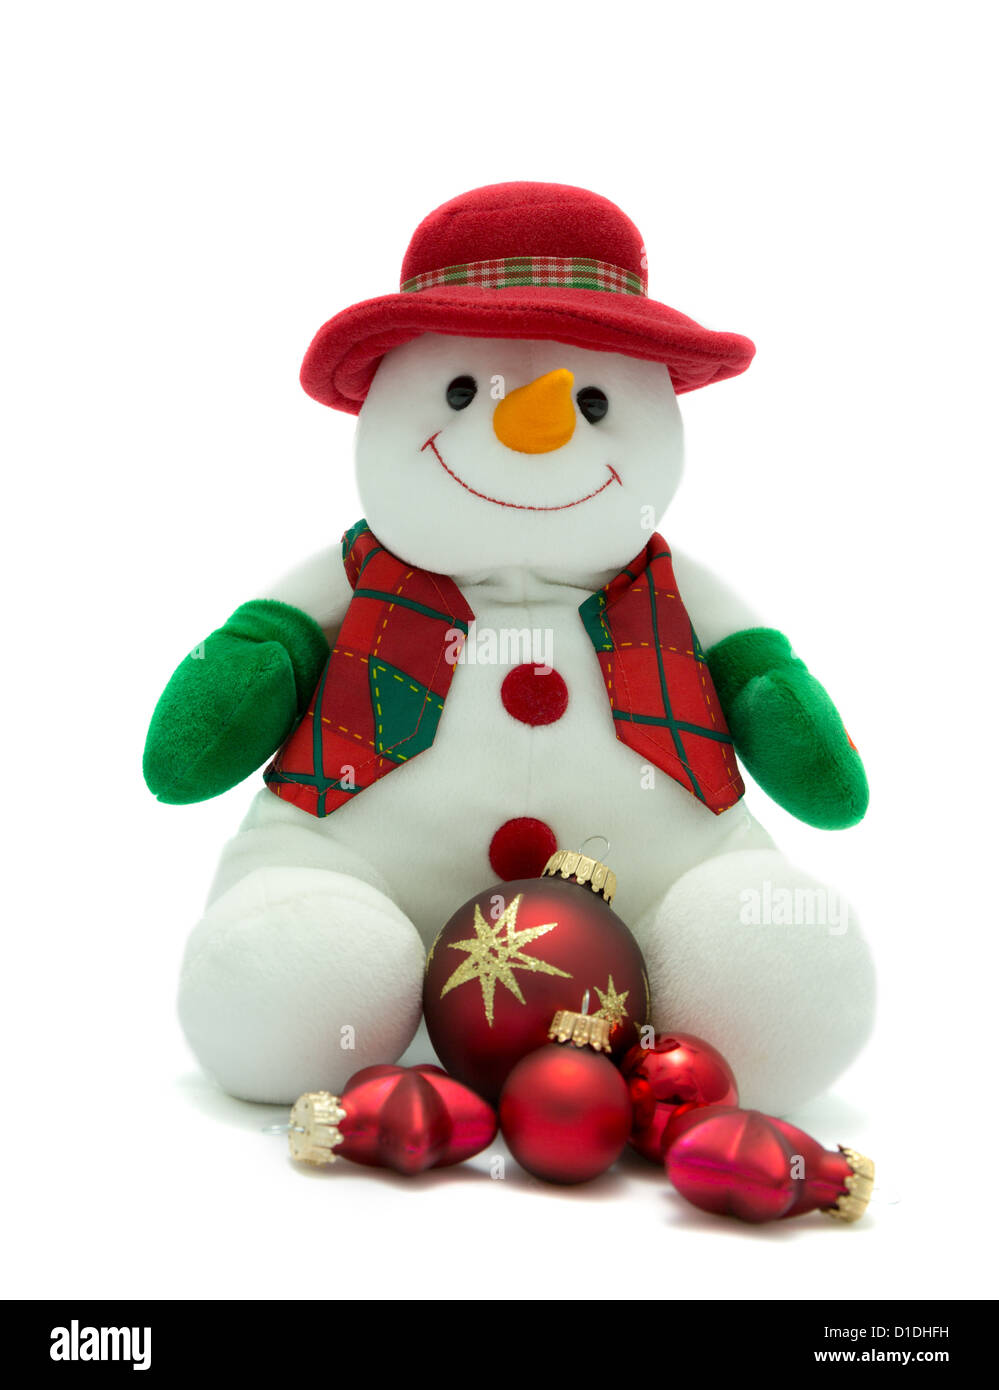 Weihnachten-Schneemann mit roten festliche Kugeln Stockfoto